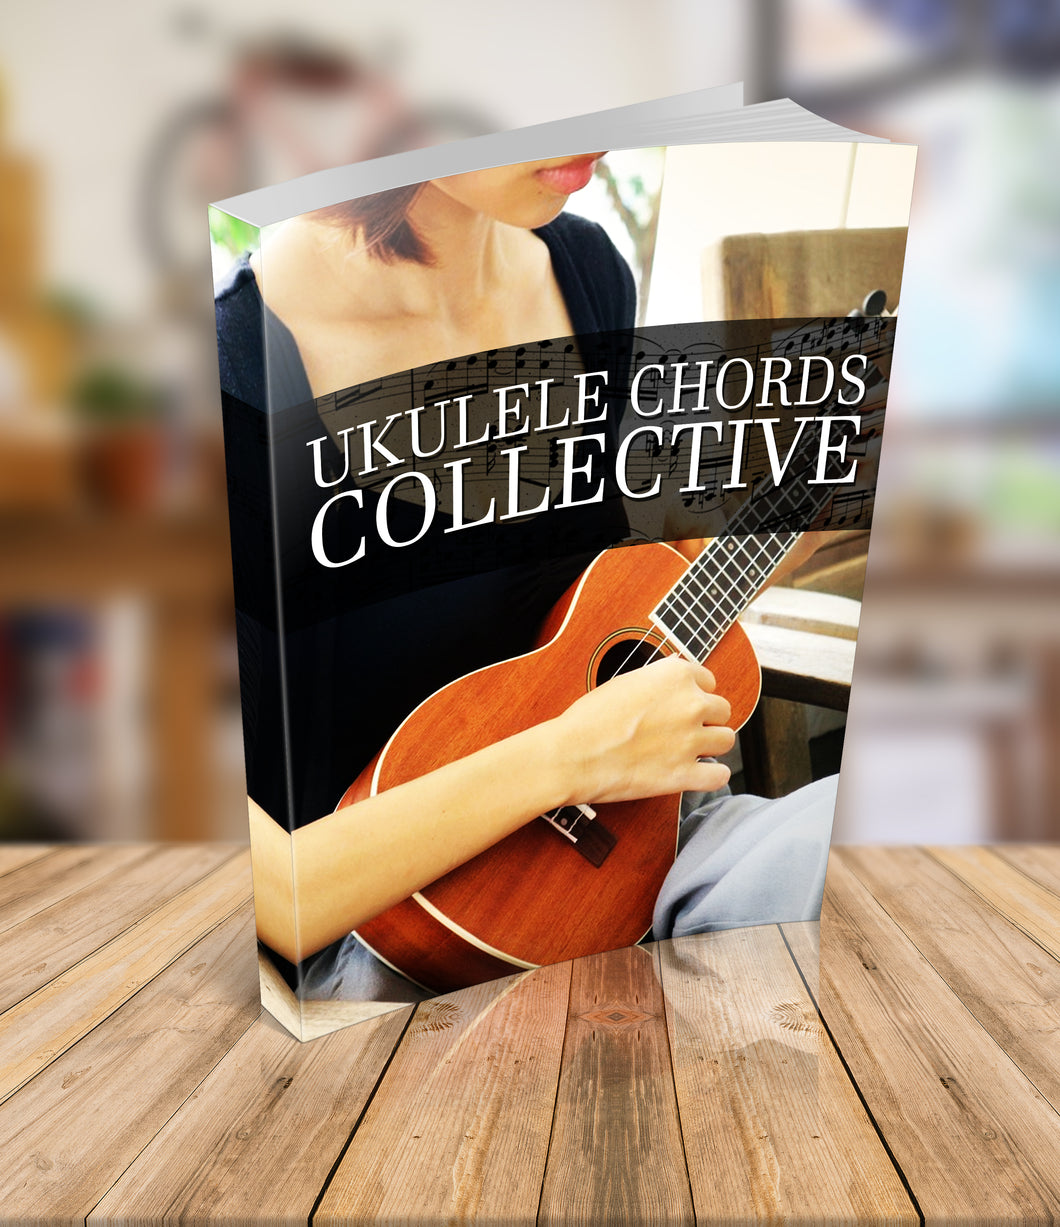 Ukulele Chords Collective